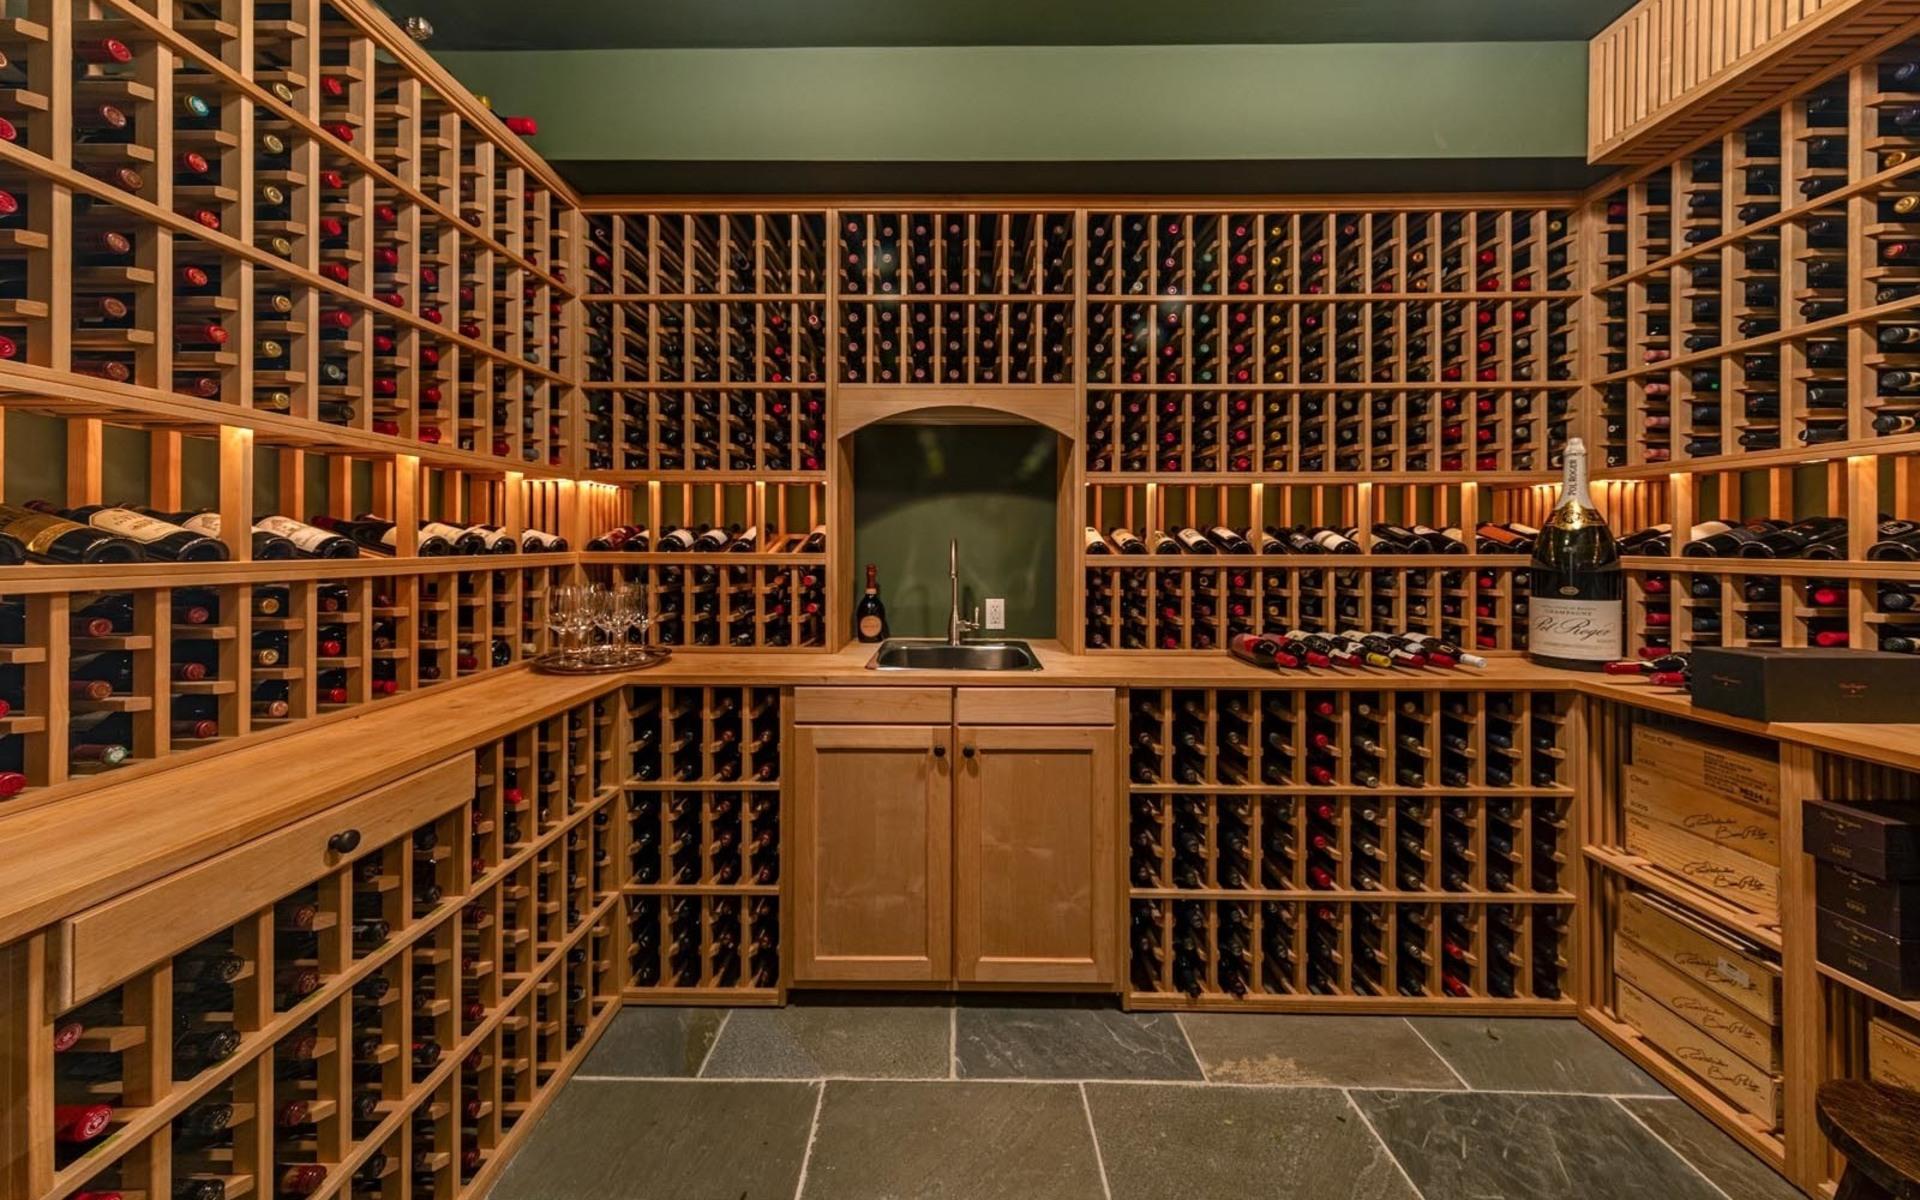 Vinkällaren har plats för mycket vinflaskor.